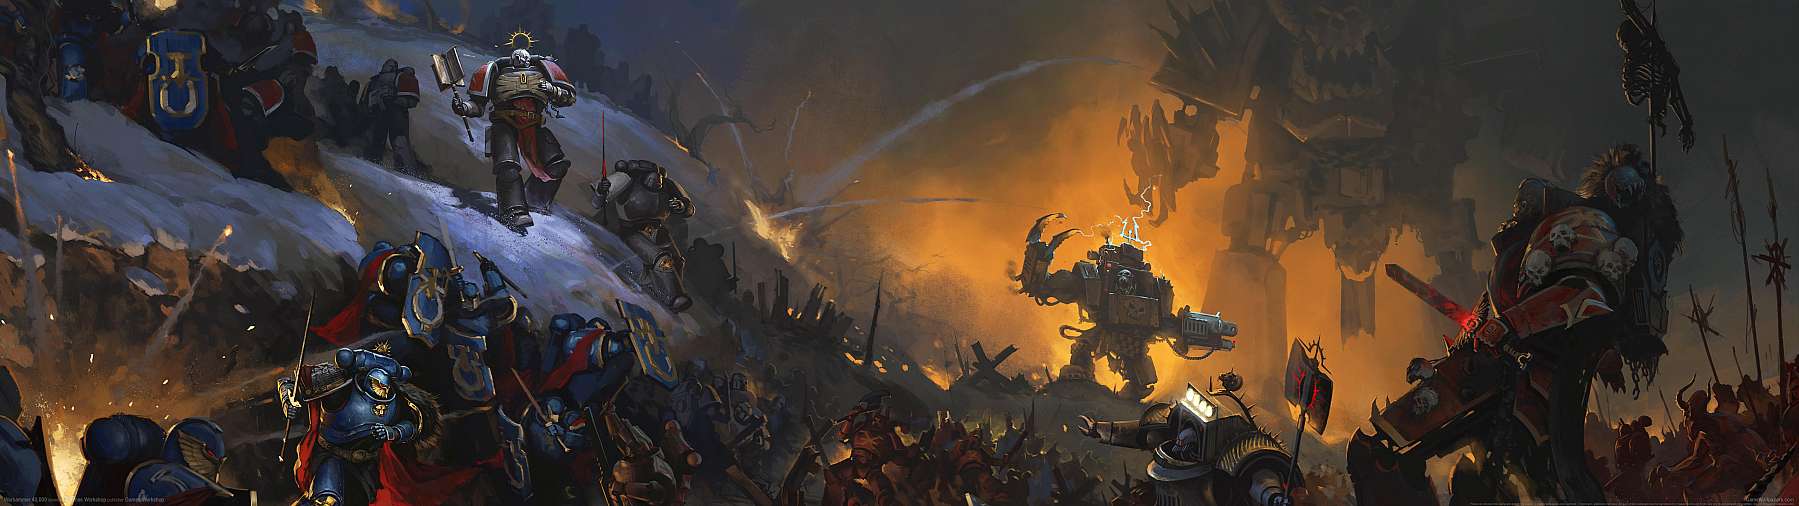 Warhammer 40,000 superwide achtergrond 09